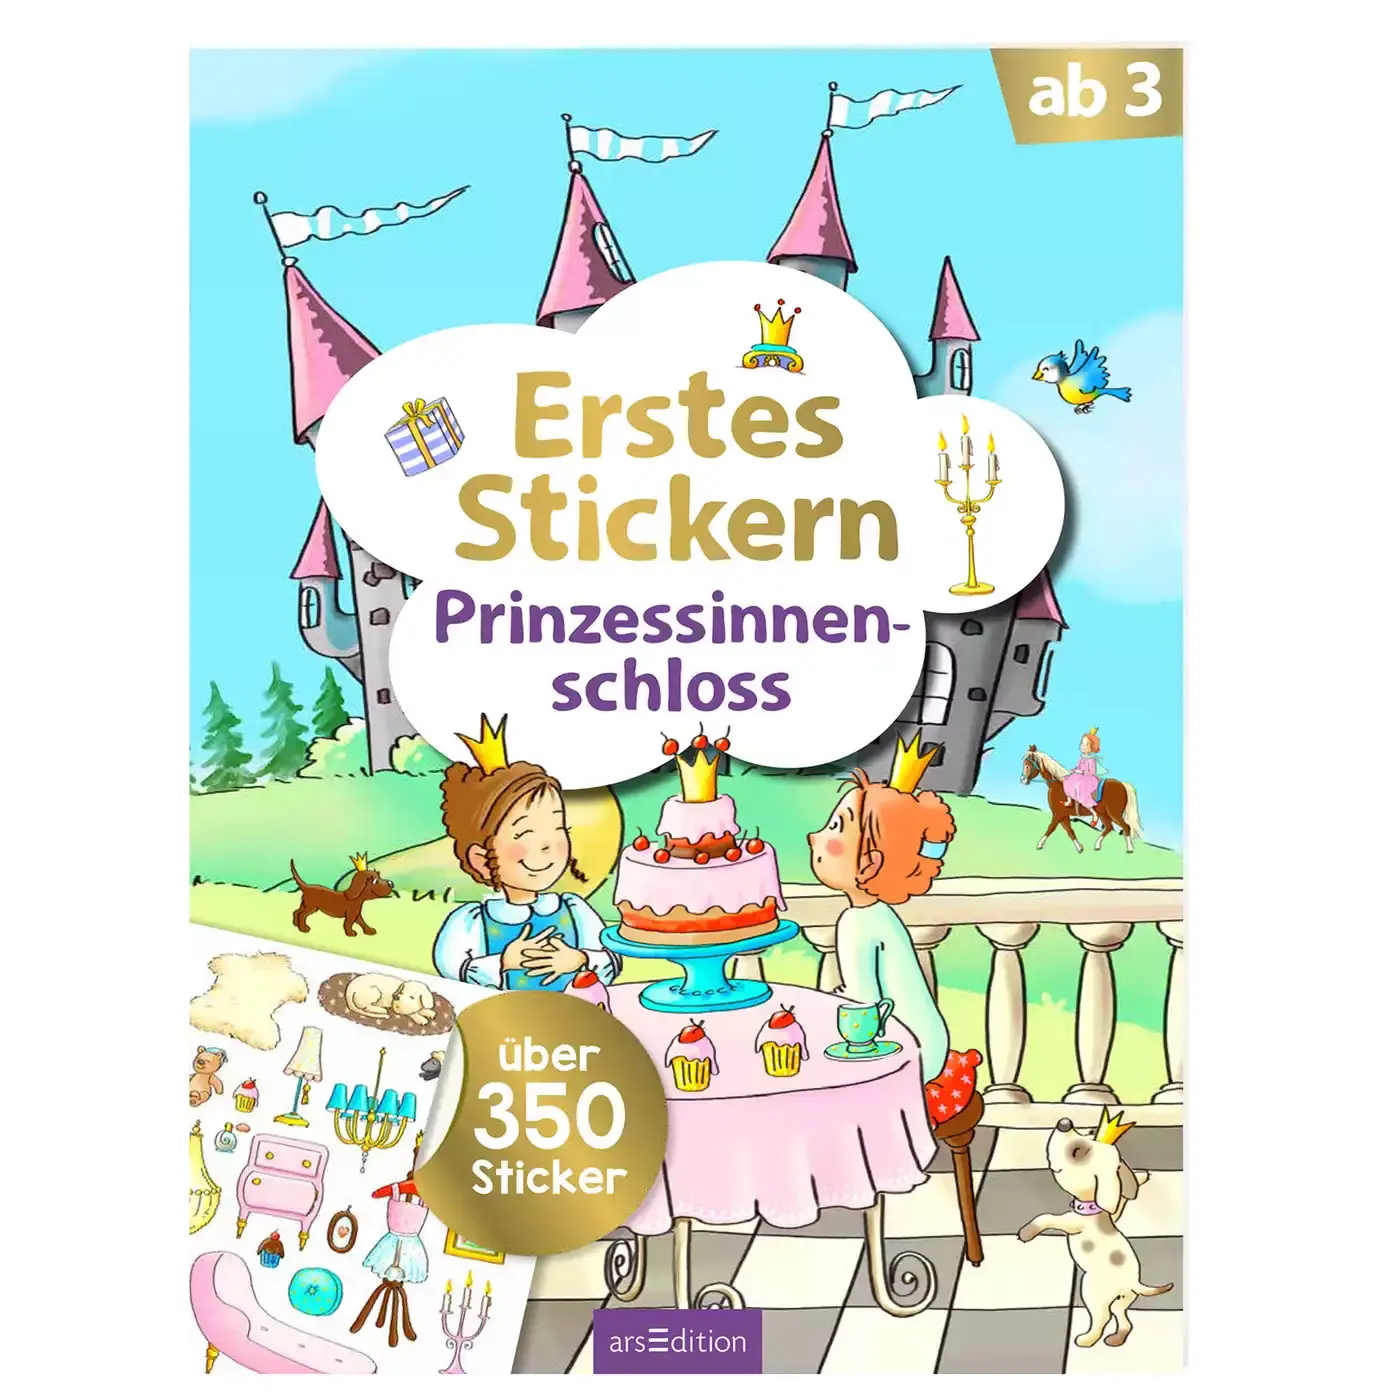 Erstes Stickern - Prinzessinnenschloss arsEdition 2000582203903 3